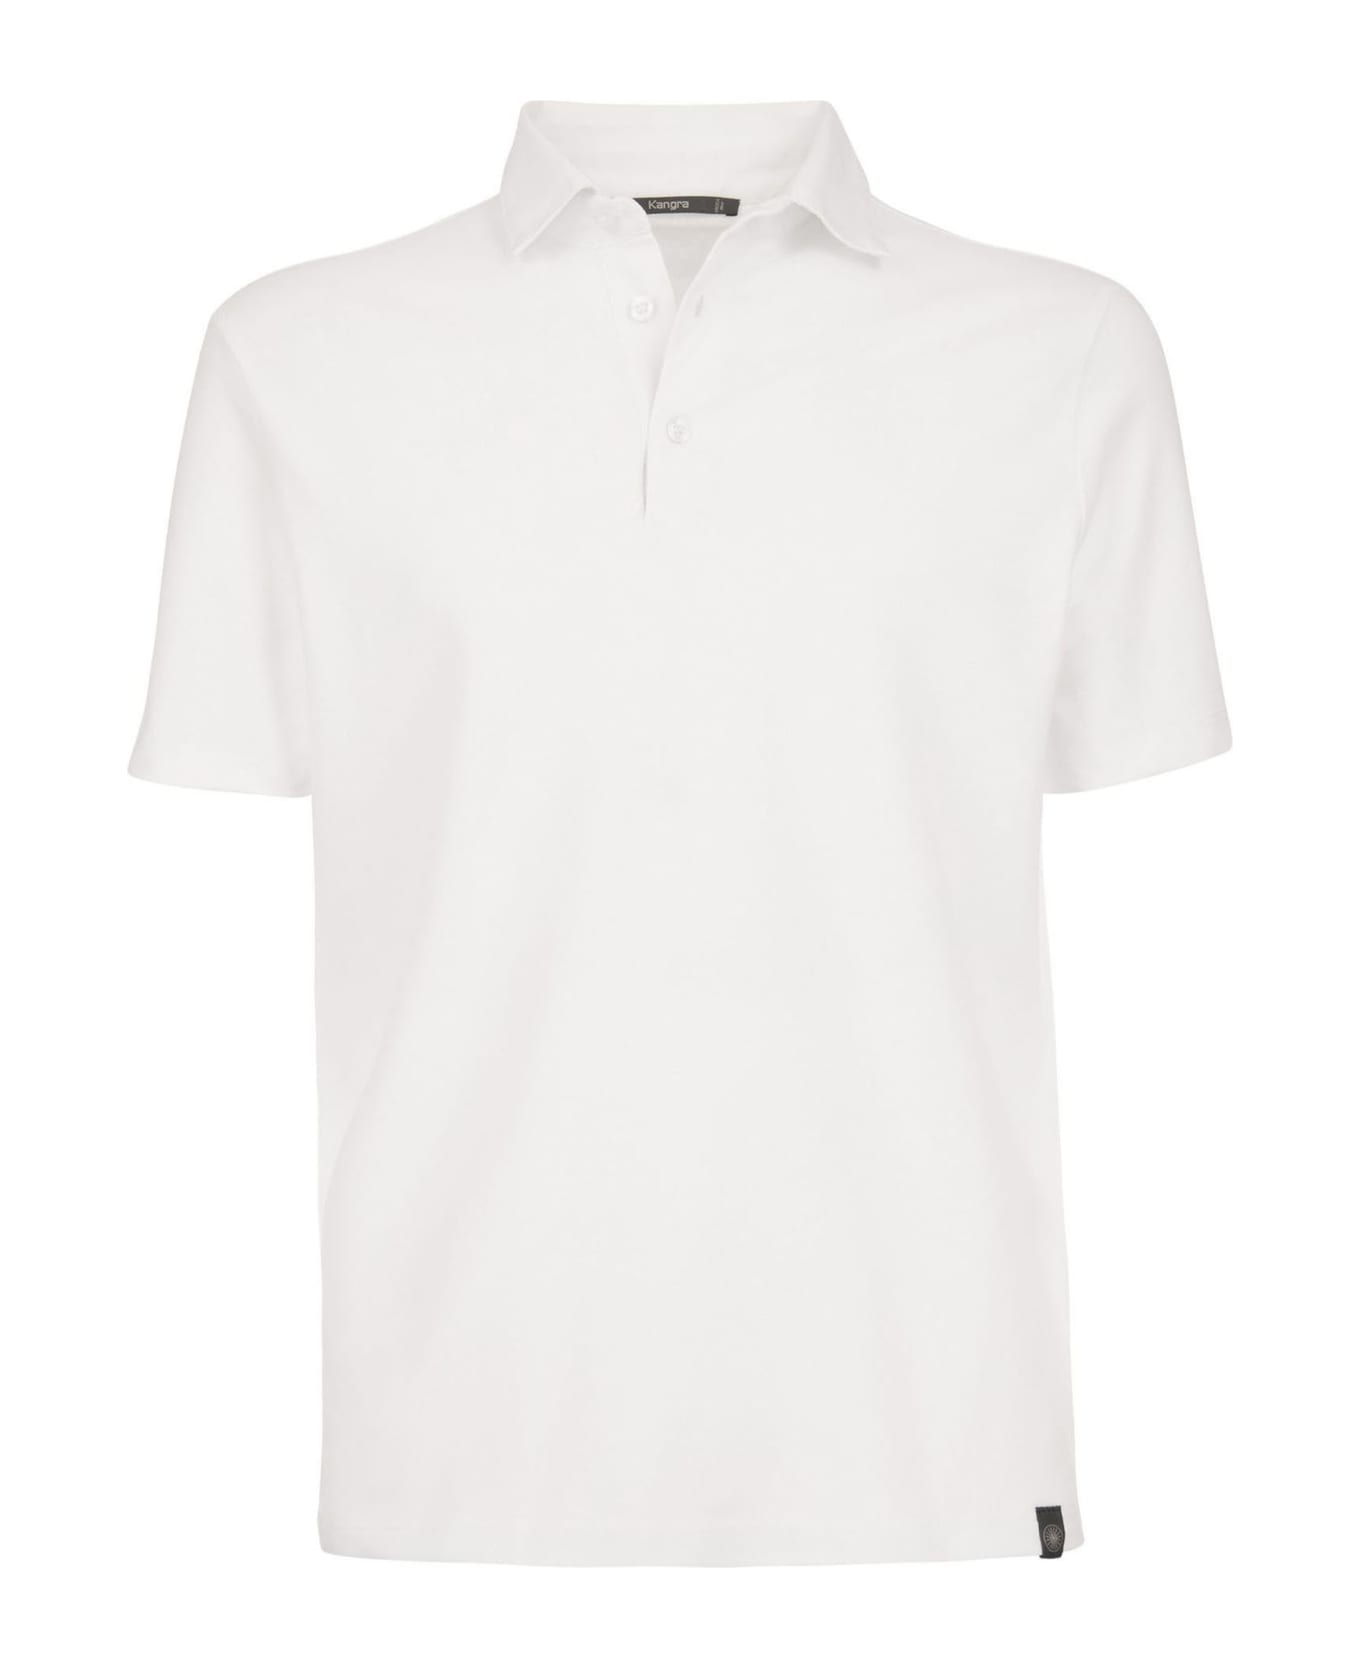 Kangra White Cotton Polo Shirt - White ポロシャツ